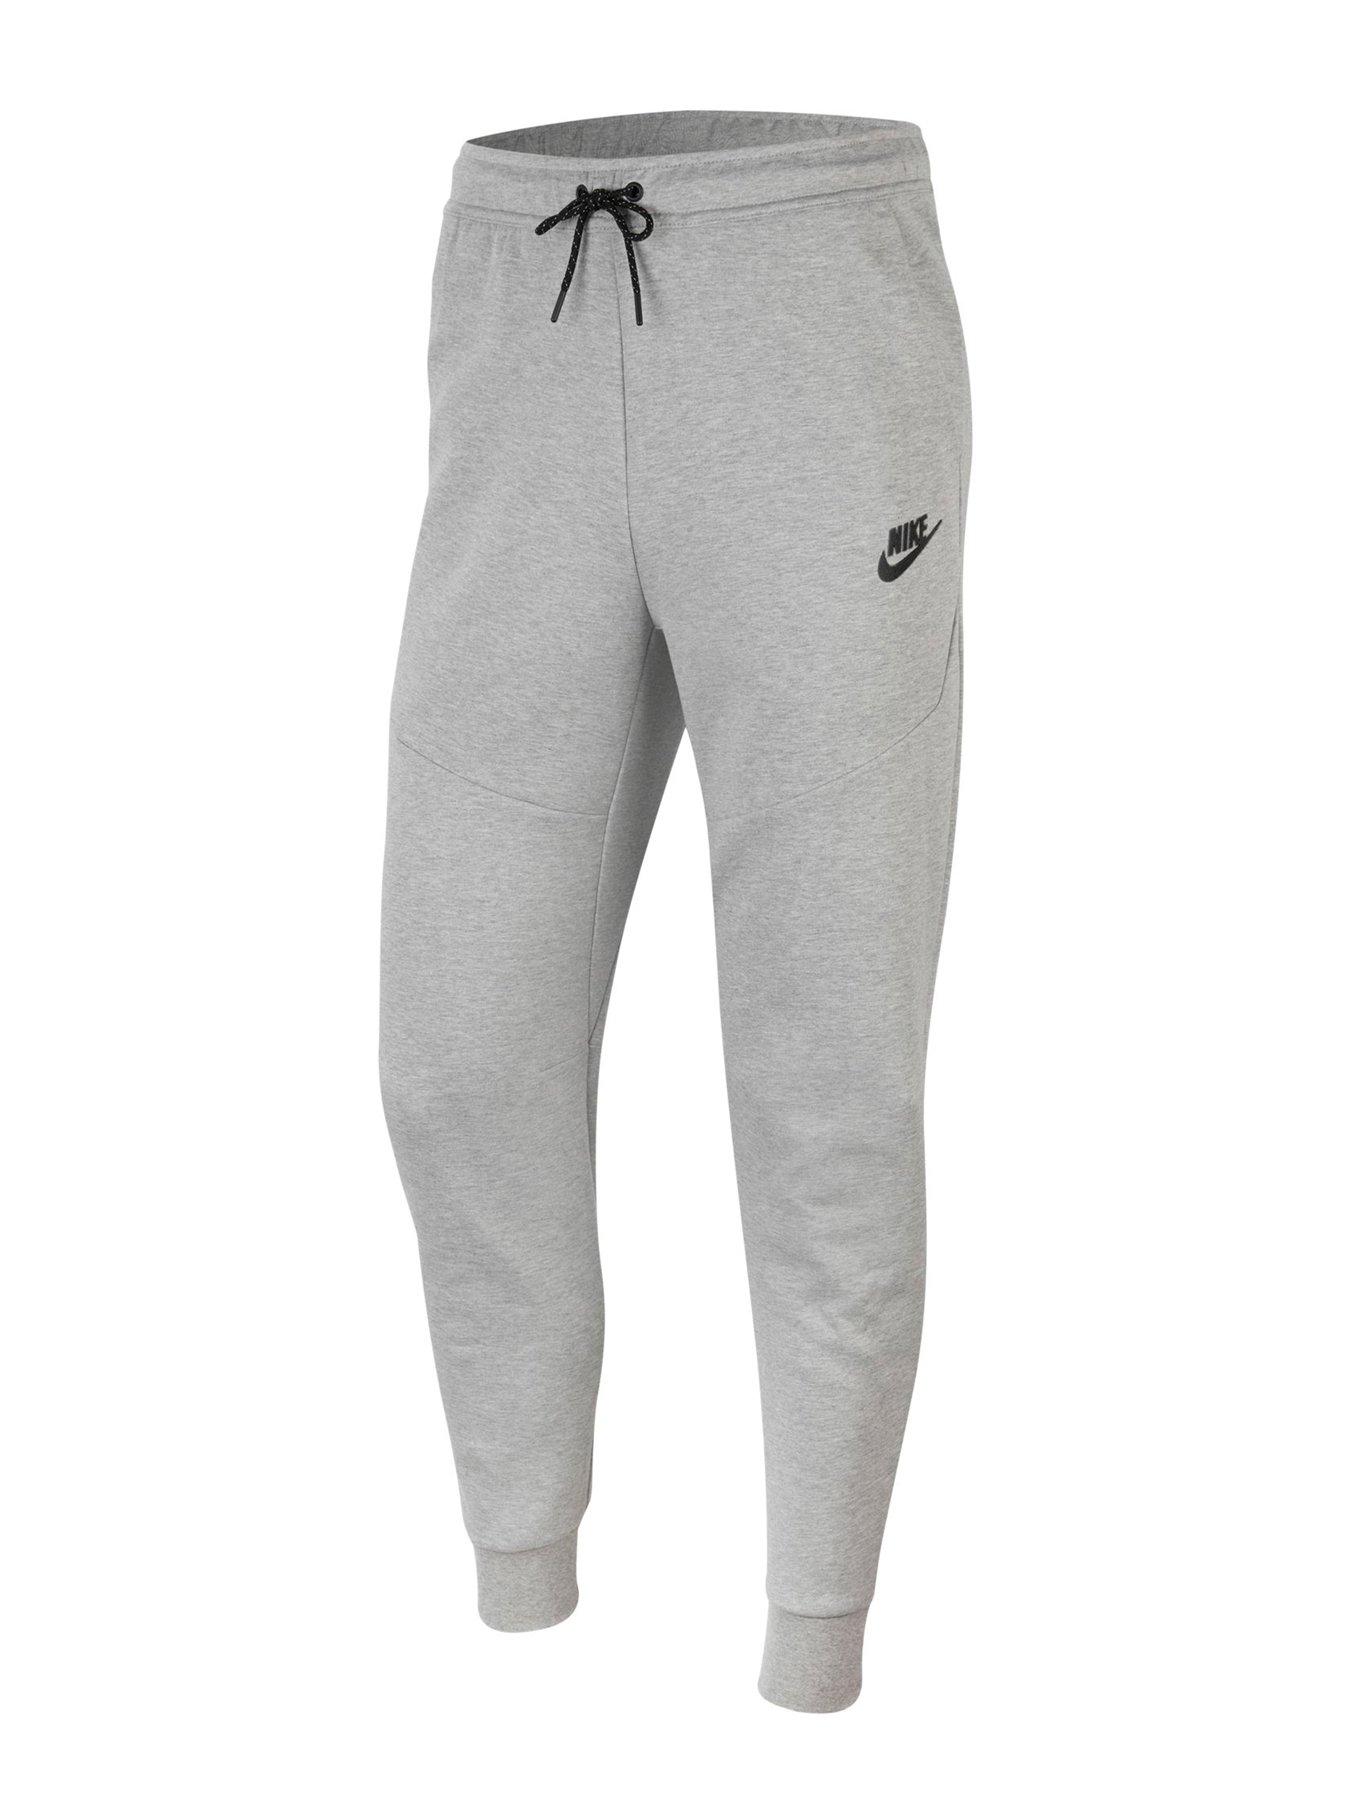 Nike Reflective Tech Fleece Pants - Dark Grey | very.co.uk